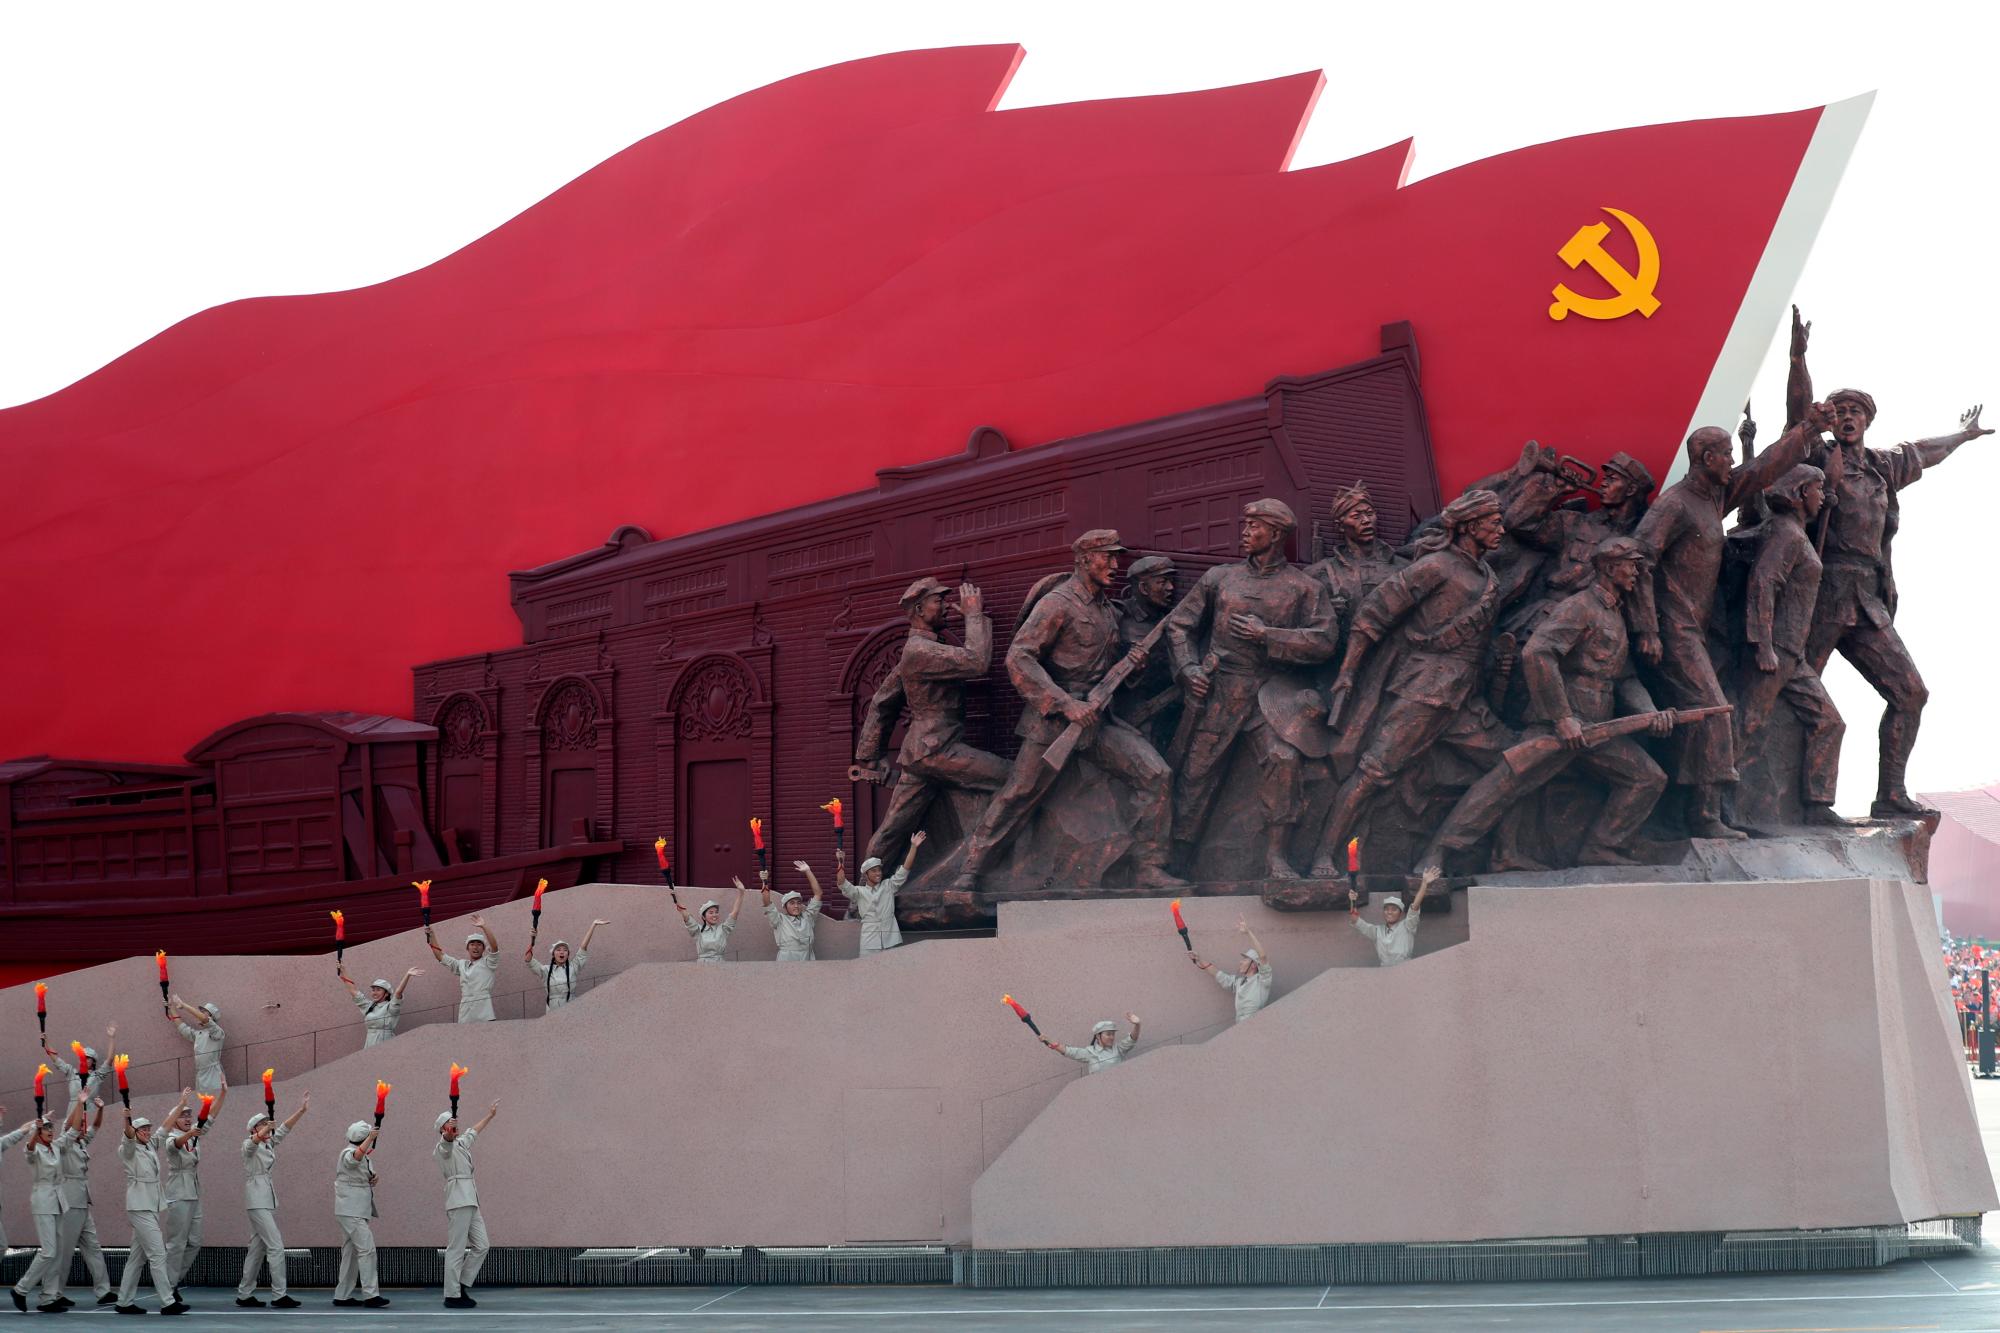 Los participantes marchan durante la celebración para conmemorar el 70 aniversario de la fundación de la China comunista en Beijing, el martes 1 de octubre de 2019.